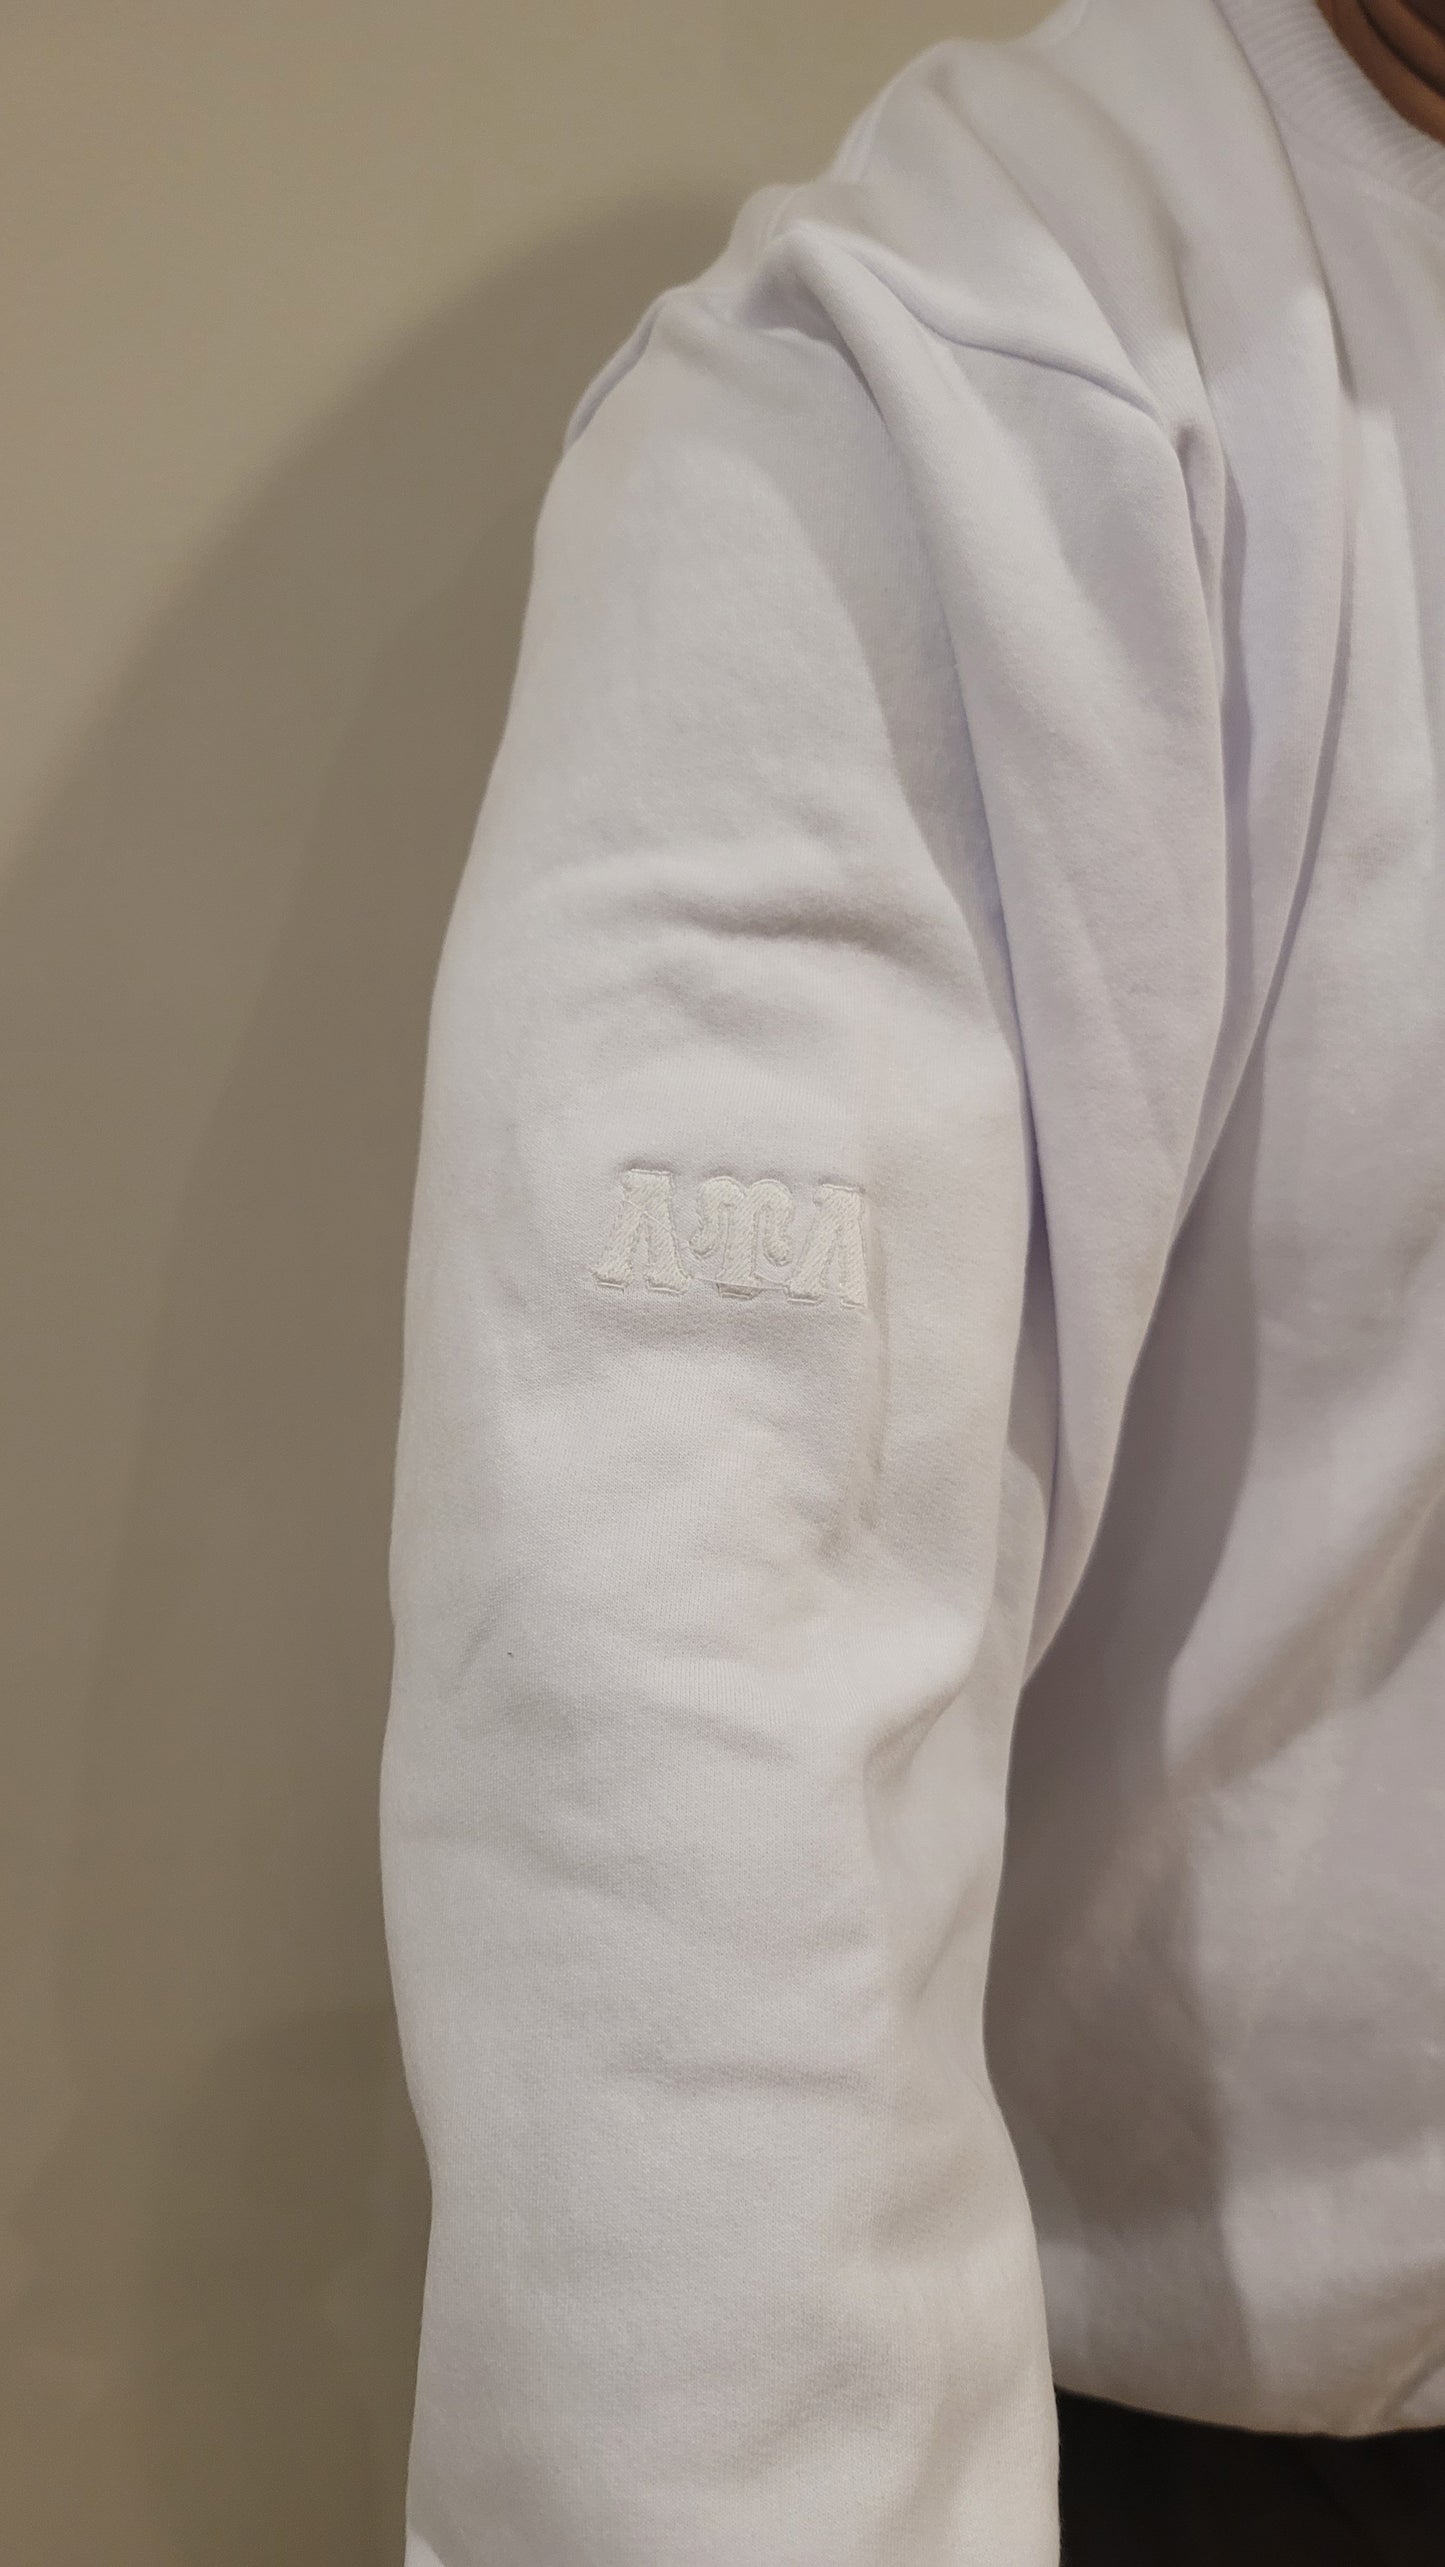 White LUL Fleece Button Sweatshirt Monochromatic Combo